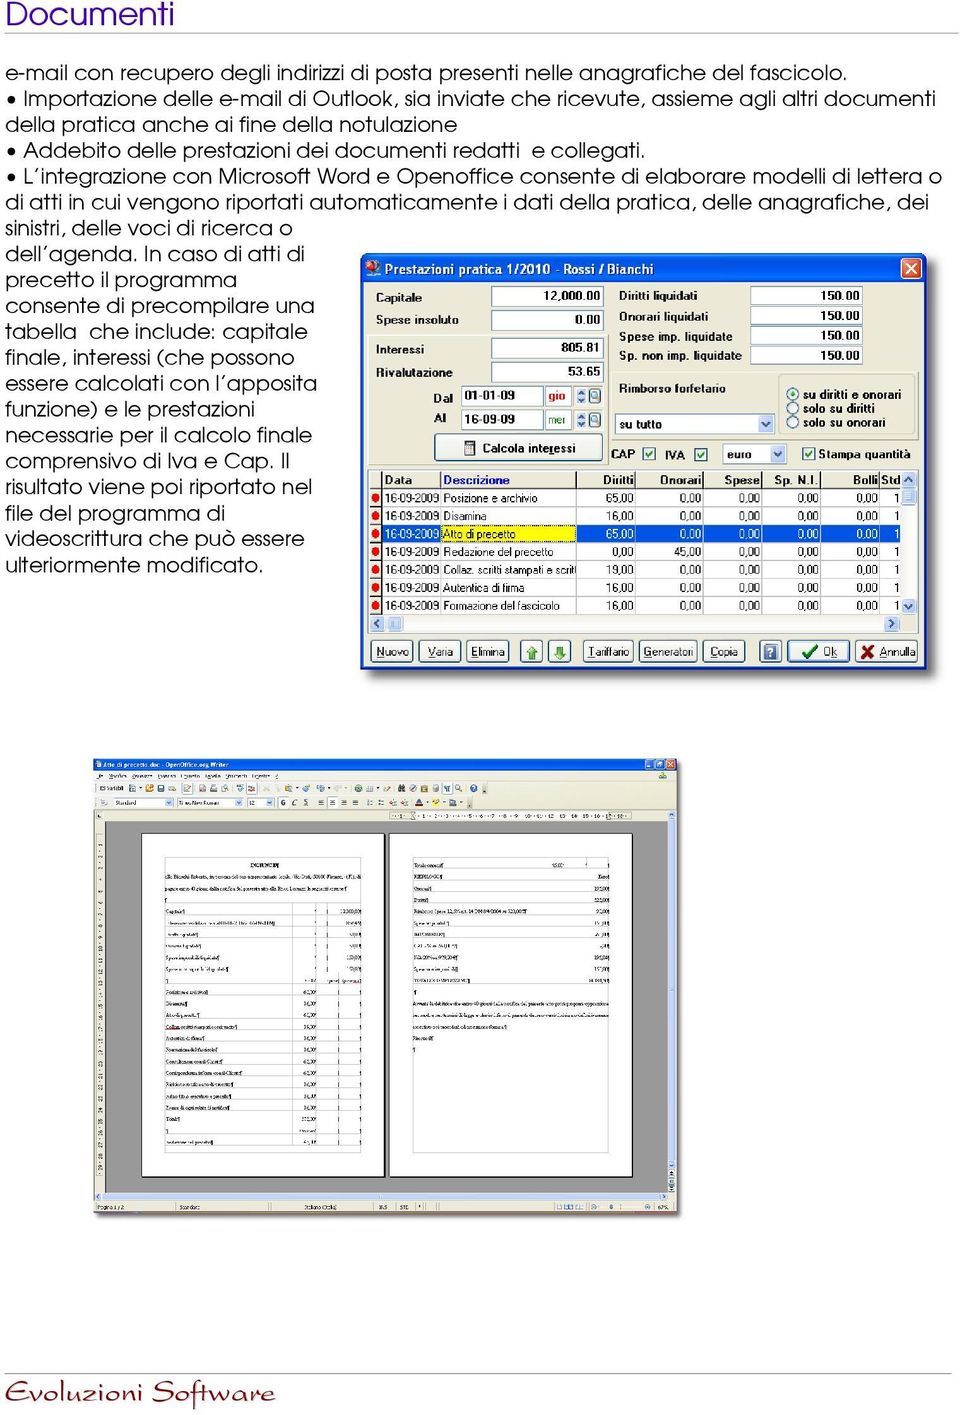 L'integrazione con Microsoft Word e Openoffice consente di elaborare modelli di lettera o di atti in cui vengono riportati automaticamente i dati della pratica, delle anagrafiche, dei sinistri, delle